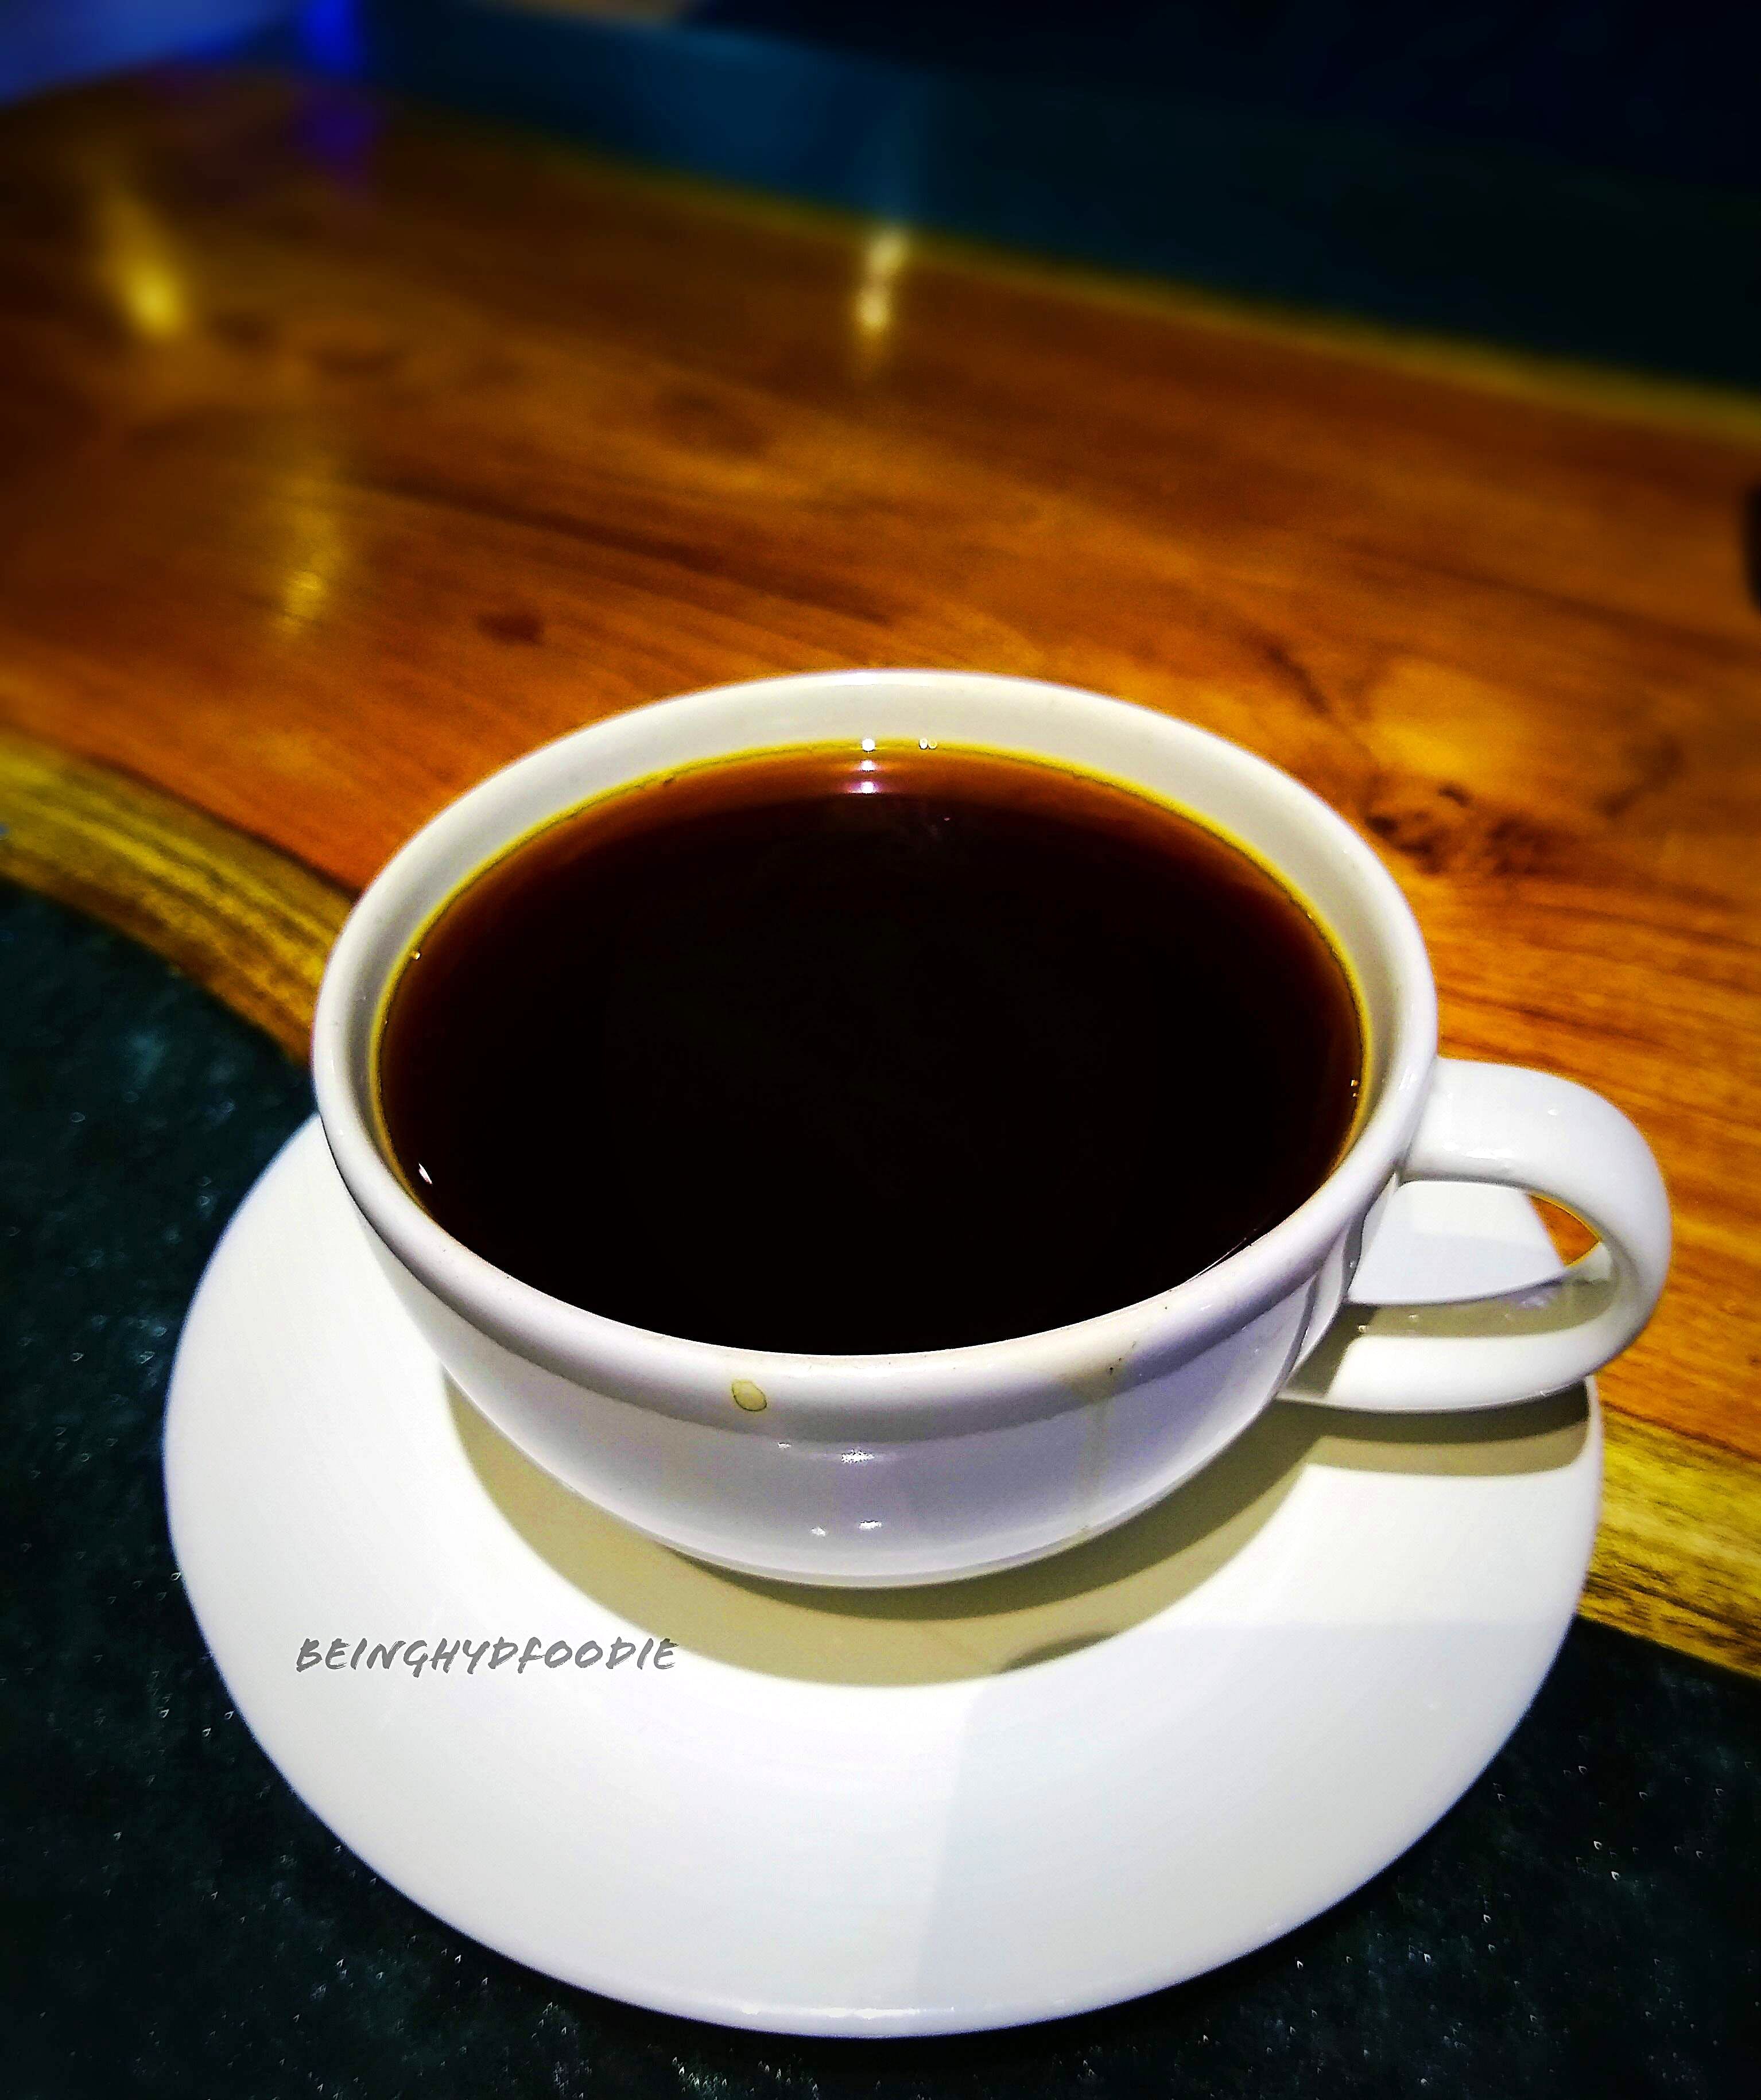 Cup,Kopi tubruk,Coffee cup,Cup,Dandelion coffee,Chinese herb tea,Drink,Caffè americano,Food,Earl grey tea